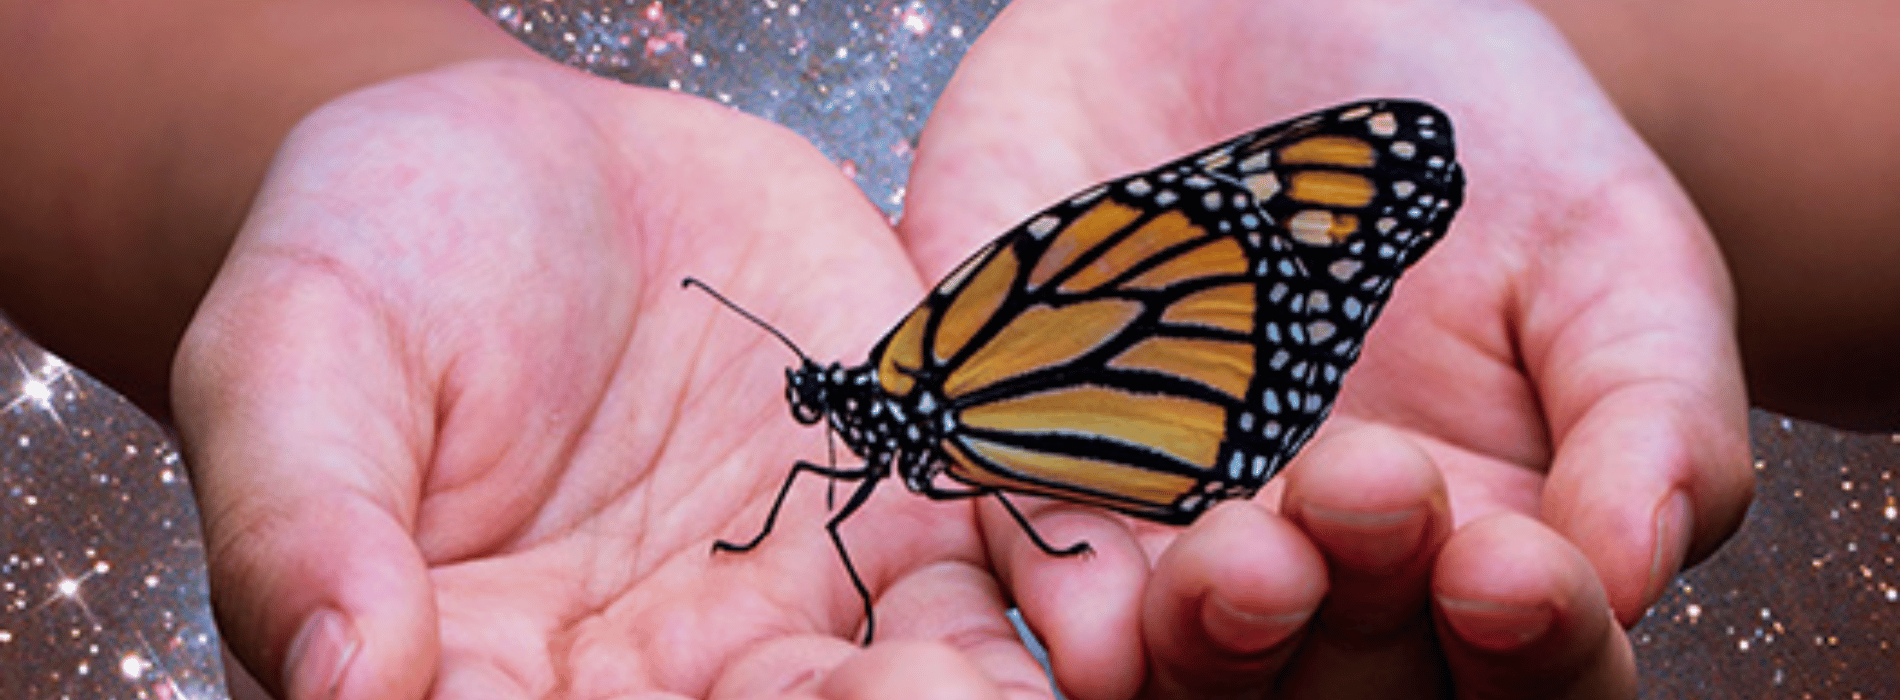 ¿Qué emociones simbolizan las mariposas?